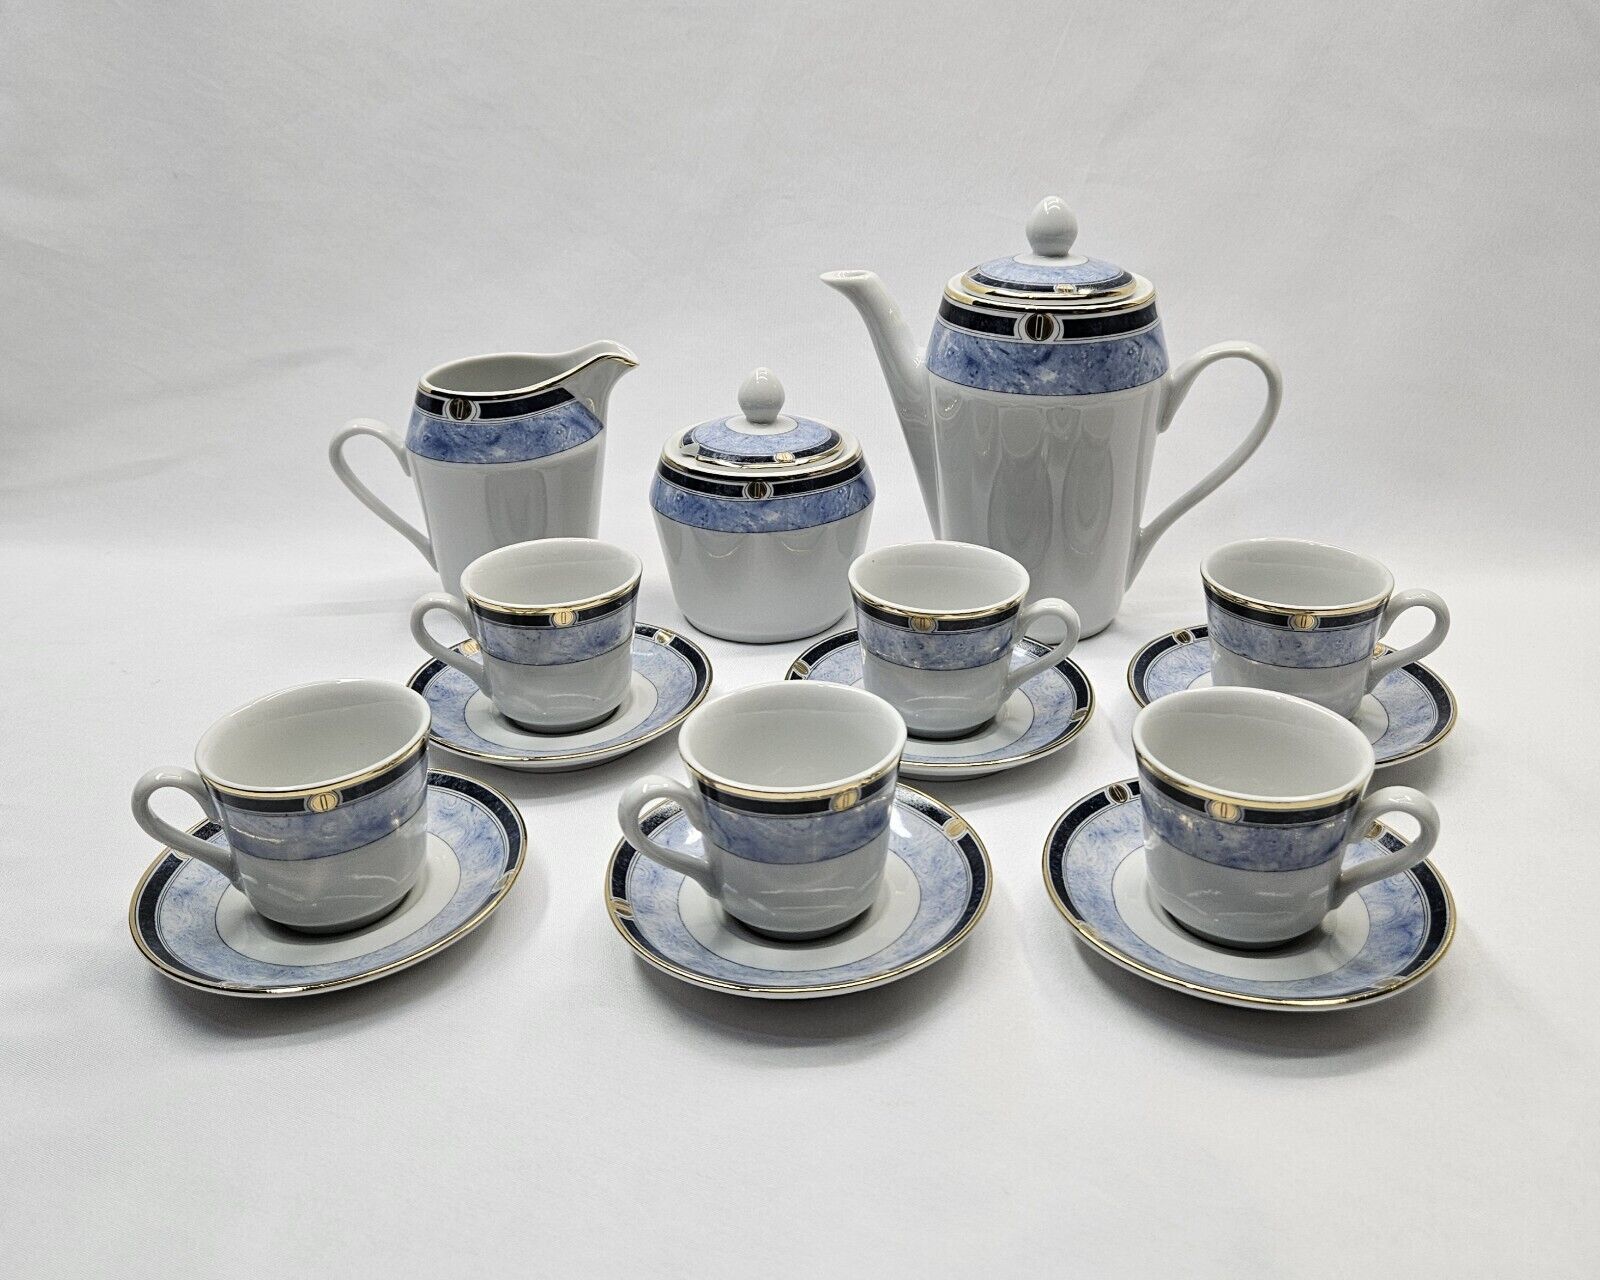 Vintage Coffee Expresso Demitasse Set Porcelain Germer Porcelanas Brazil 06 / 99